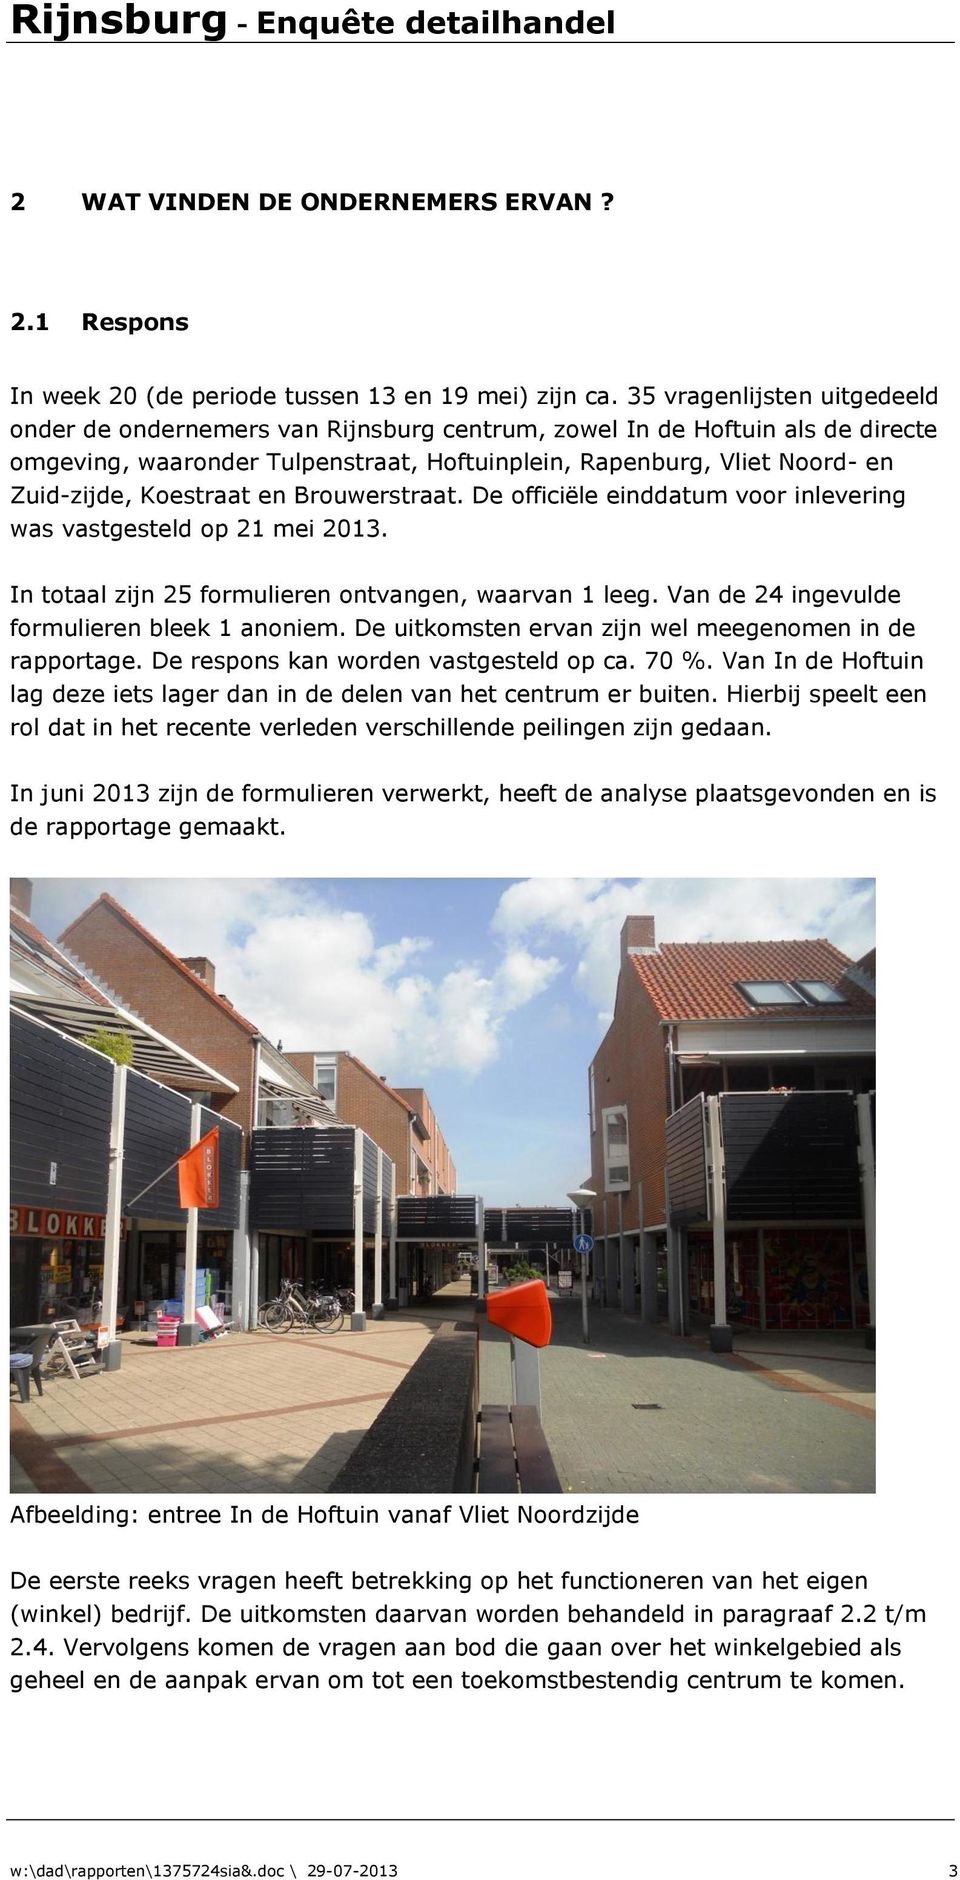 Koestraat en Brouwerstraat. De officiële einddatum voor inlevering was vastgesteld op 21 mei 2013. In totaal zijn 25 formulieren ontvangen, waarvan 1 leeg.